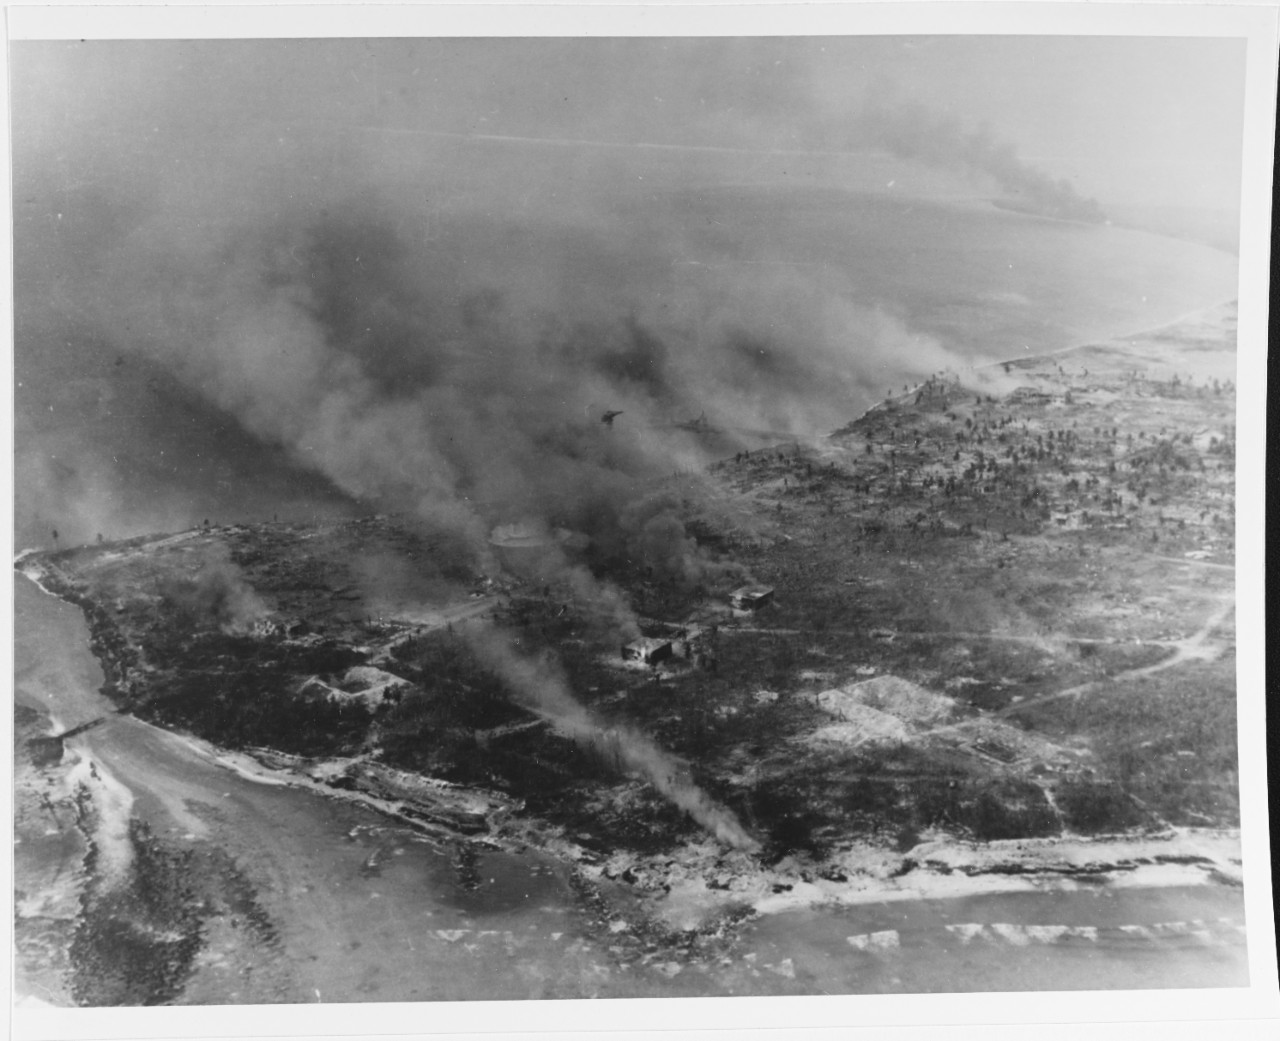 Kwajalein invasion, January-February 1944